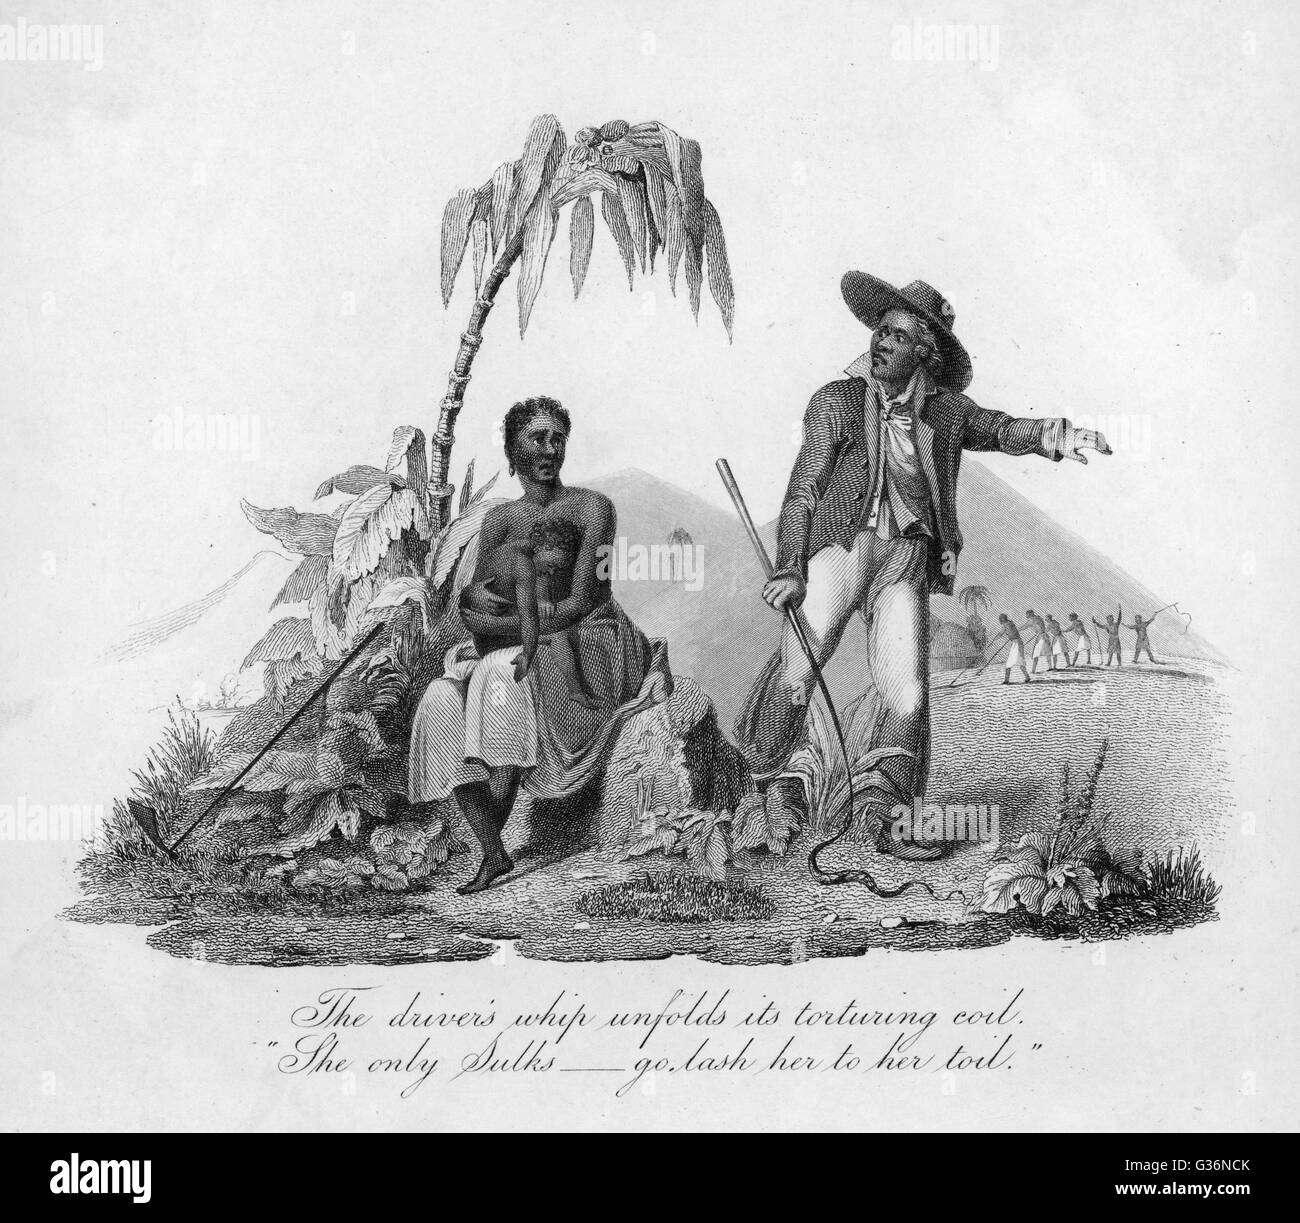 Eine versklavte Mutter in den West Indies mit ihrem Kind in ihrem Schoß wird aufgefordert, durch die Sklaventreiber zu arbeiten. "Der Fahrer Peitsche entfaltet seine quälen böse."      Datum: ca. 1835 Stockfoto